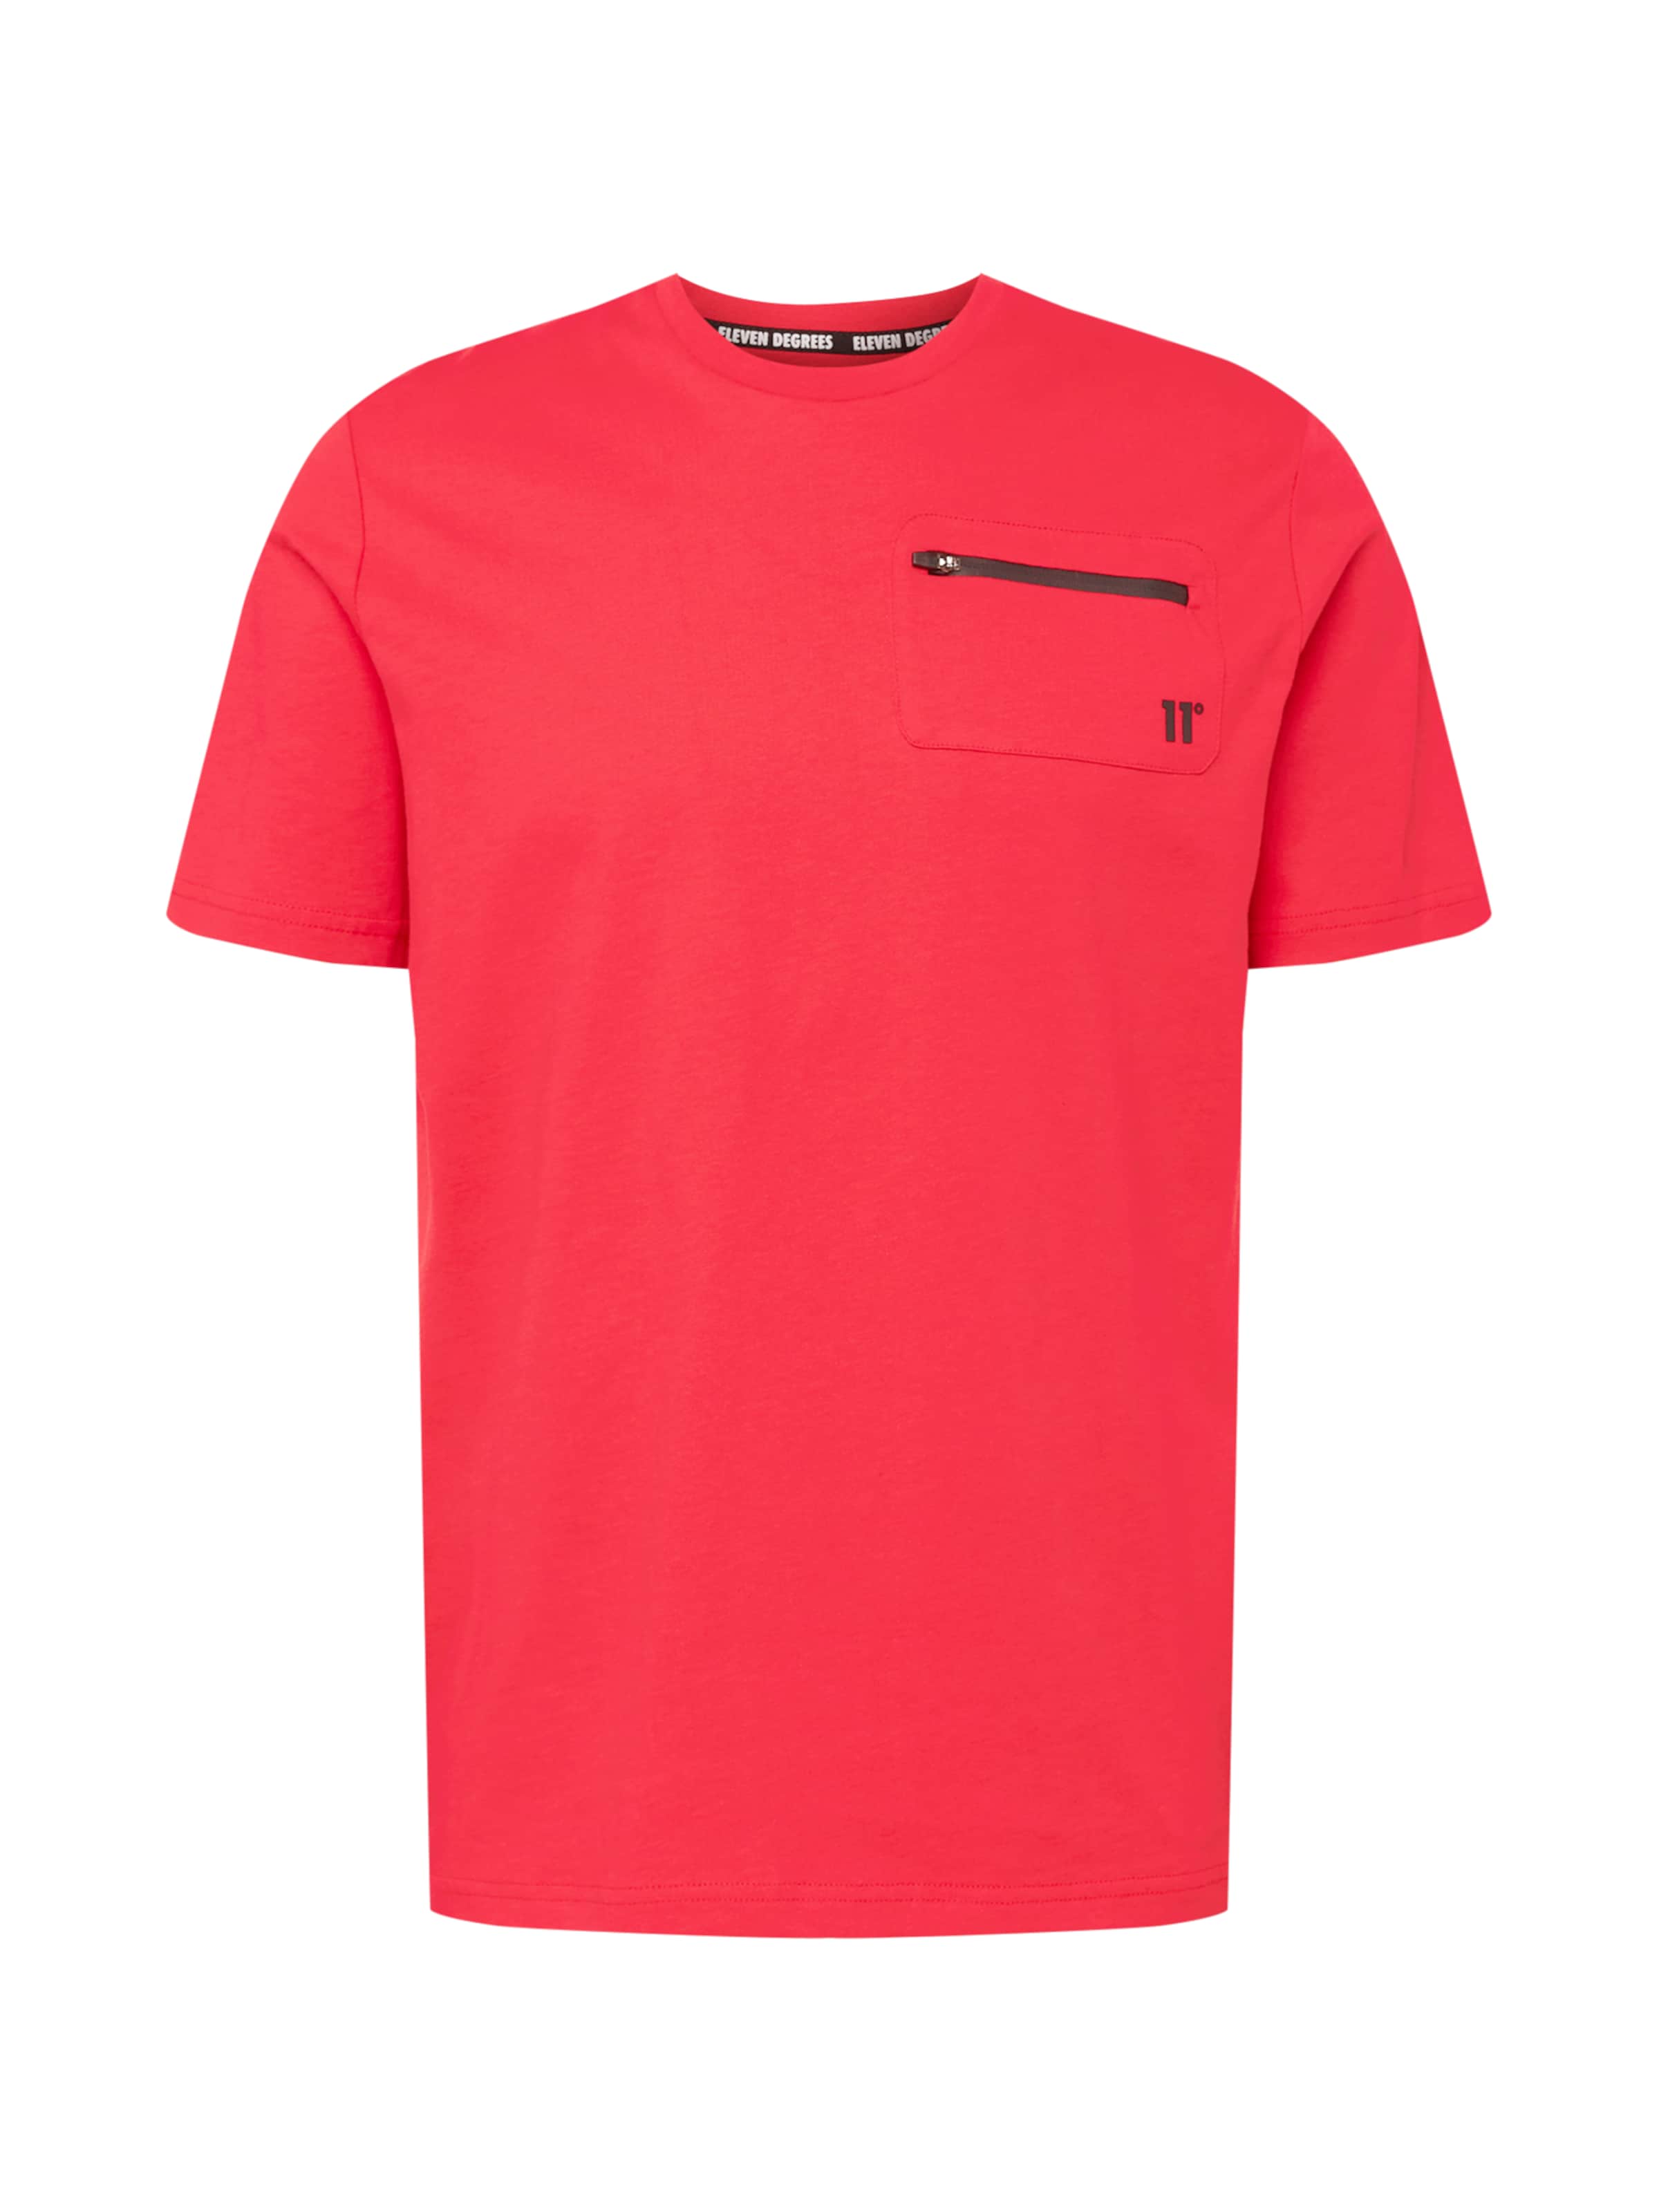 Männer Shirts 11 Degrees T-Shirt in Rot - WU54280